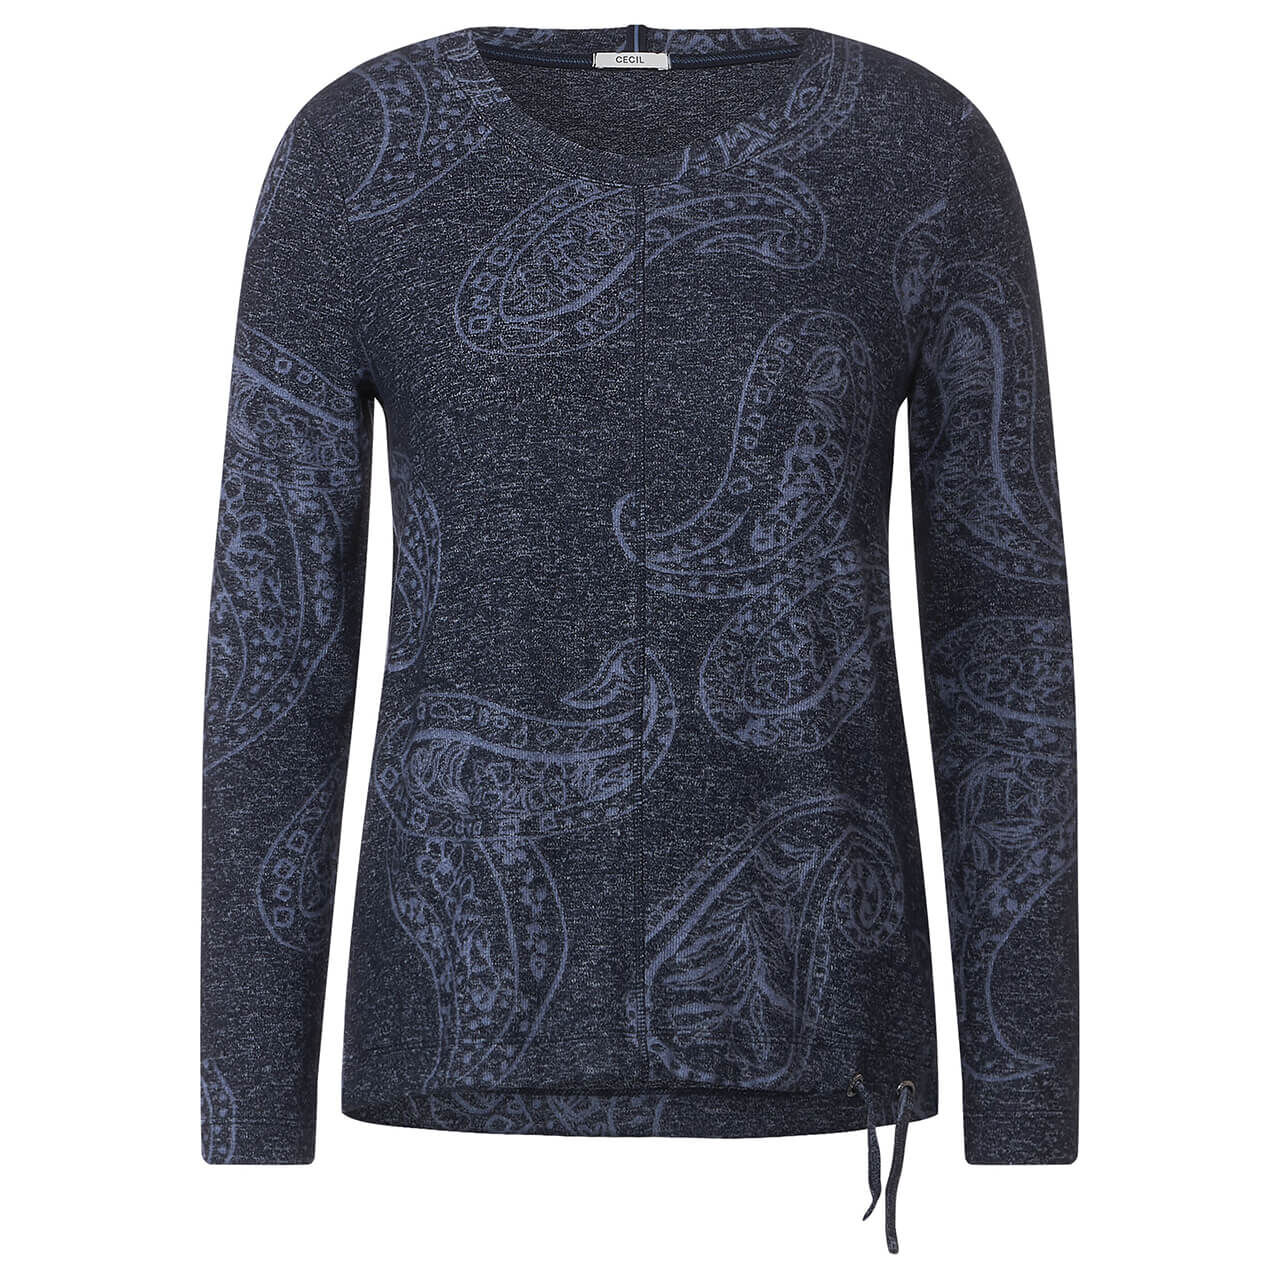 Super beliebt, hohe Qualität garantiert Cecil Langarm Shirt Paisley | in kaufen Blau 24189